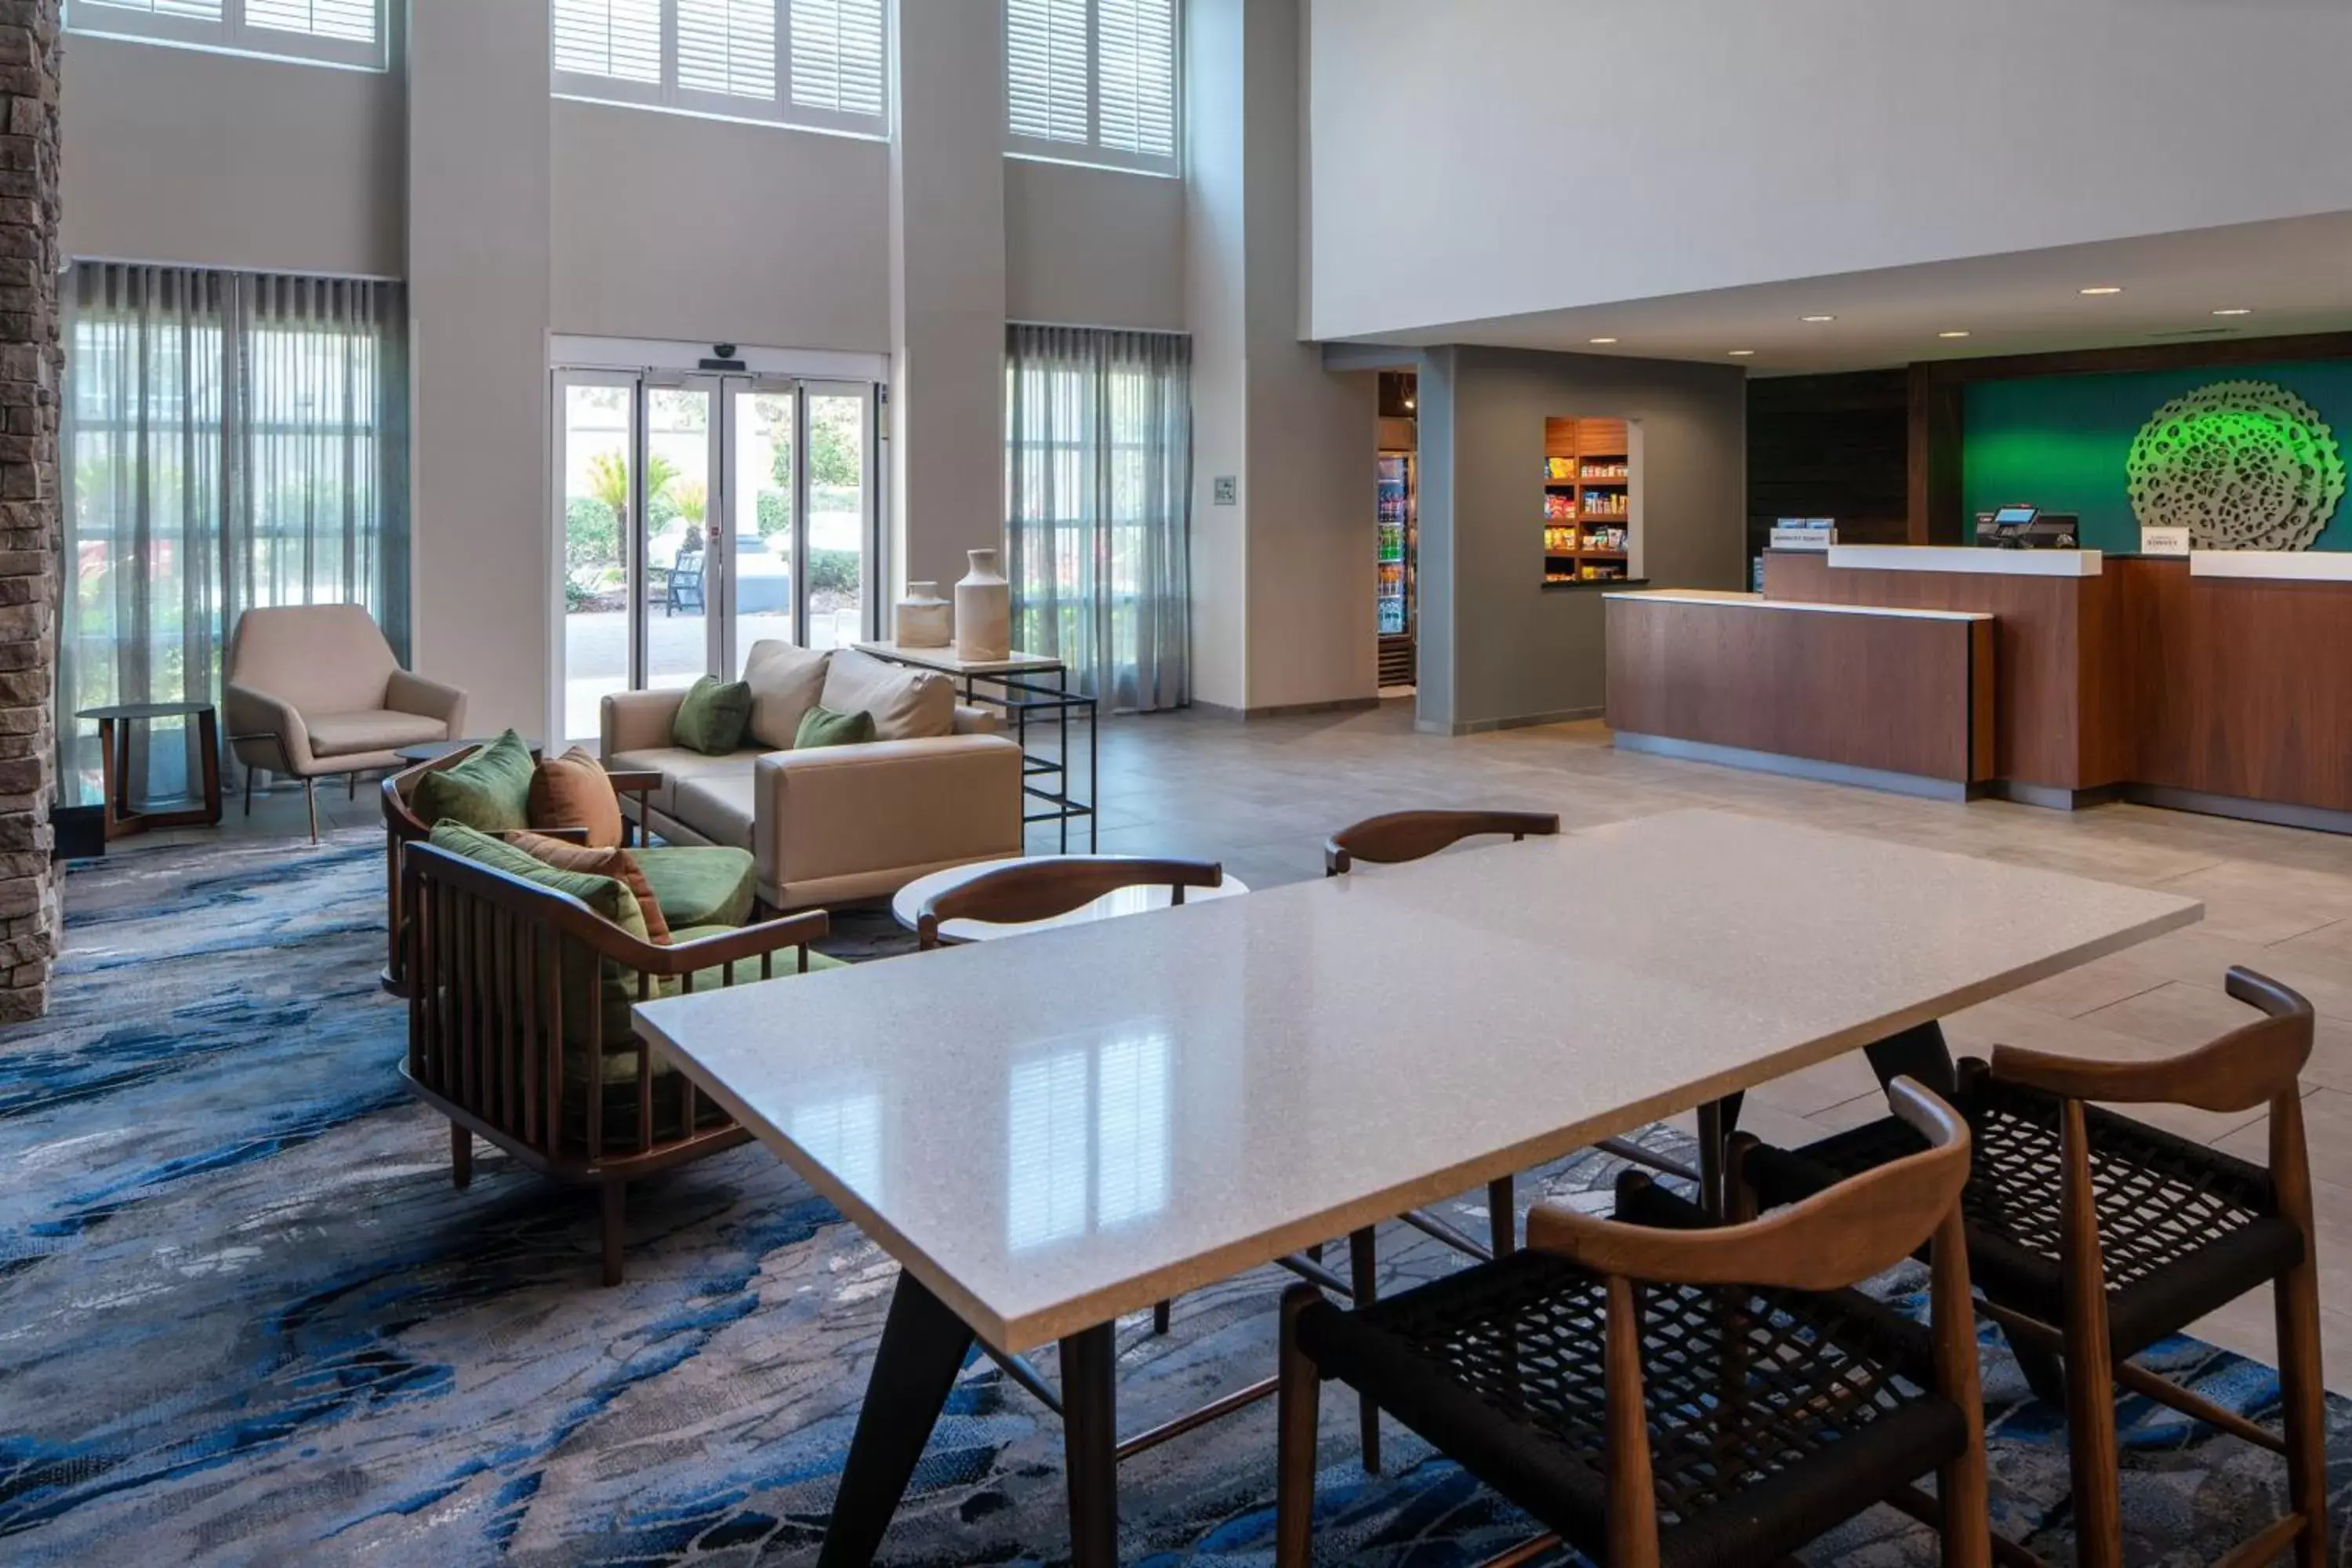 Lobby or reception in Fairfield Inn & Suites by Marriott Destin